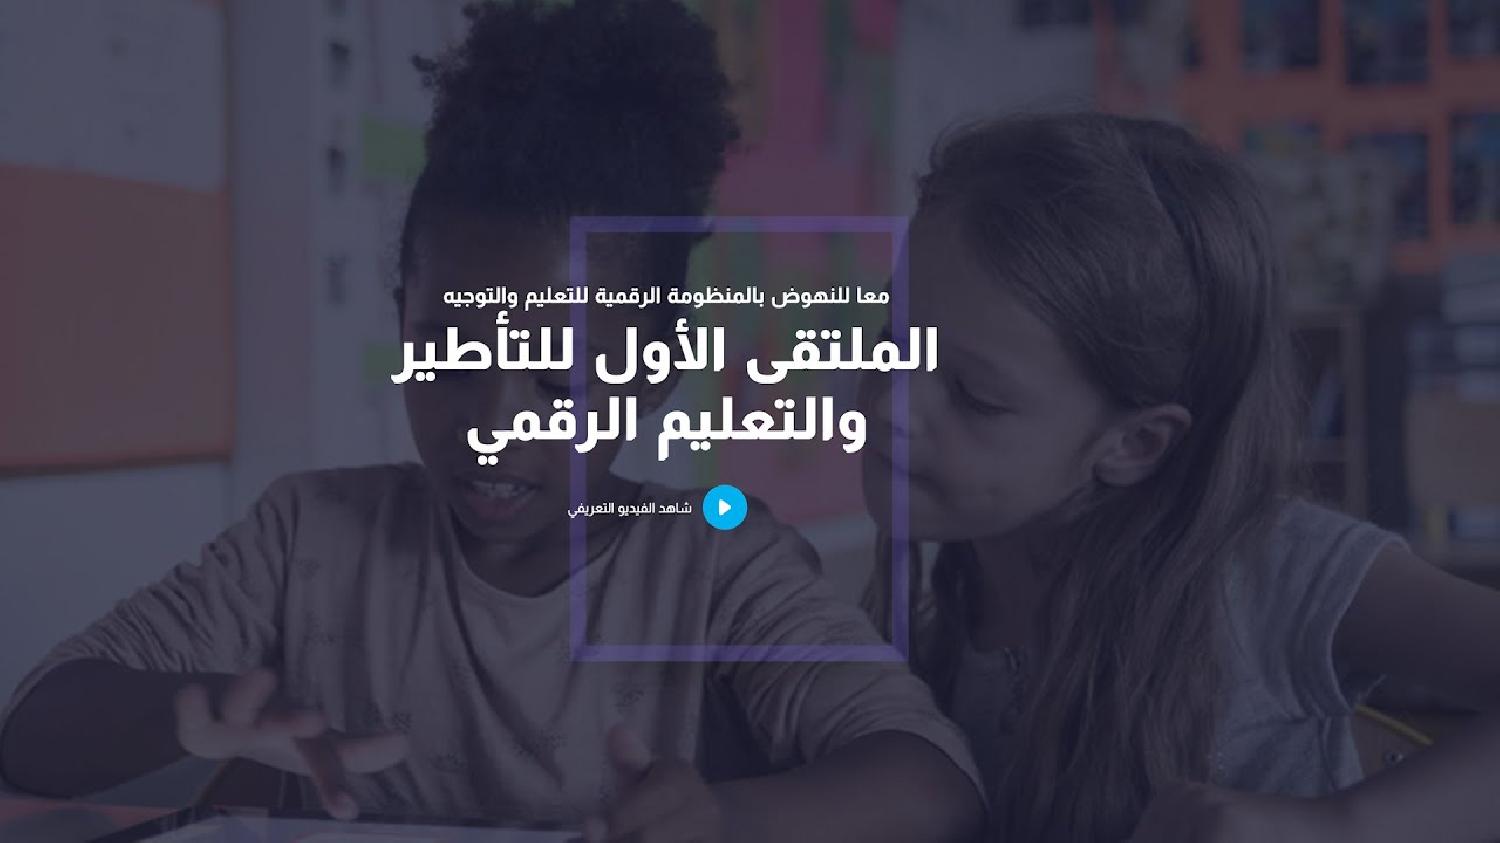 ‘الملتقى العربي الأول للتأطير والتعليم الرقمي’ ينطلق يوم غد الأربعاء